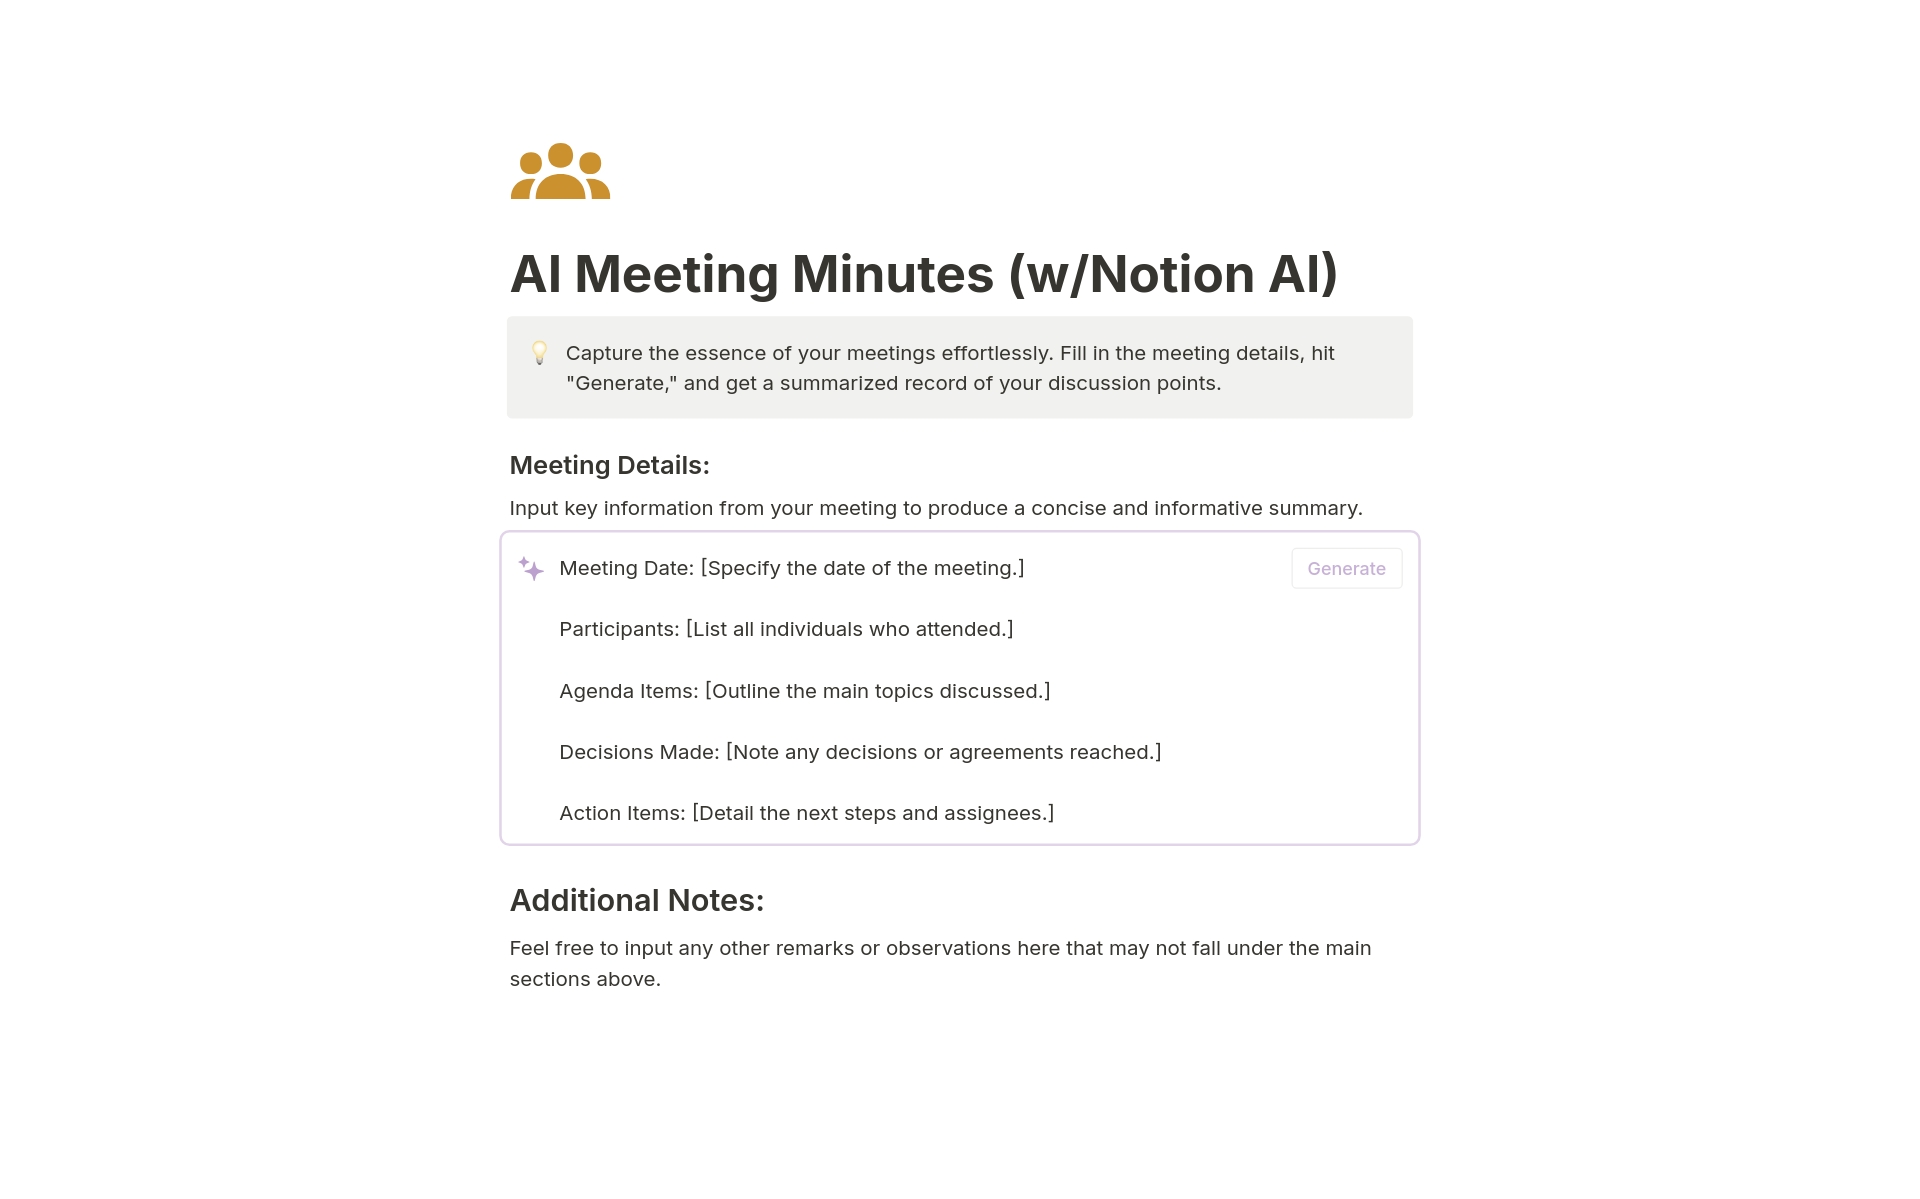 Vista previa de una plantilla para AI Meeting Minutes